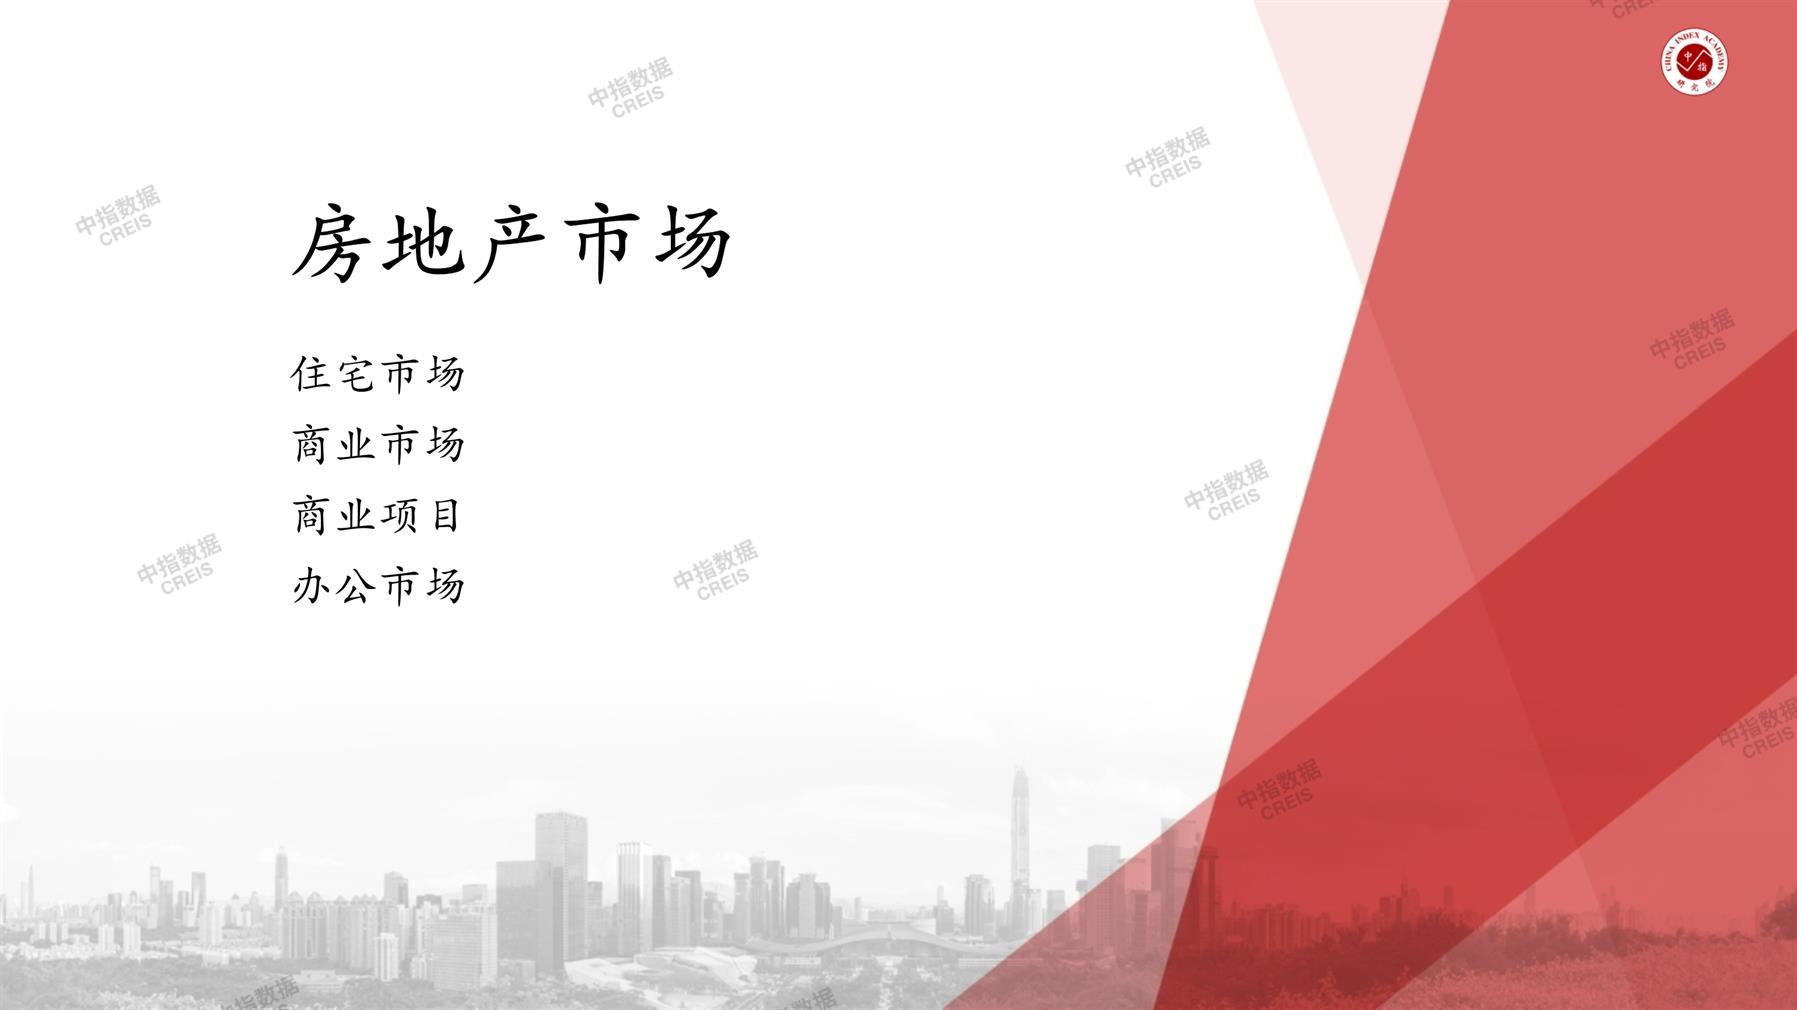 上海、房地产市场、房产市场、住宅市场、商业市场、办公市场、商品房、施工面积、开发投资、新建住宅、新房项目、二手住宅、成交套数、成交面积、成交金额